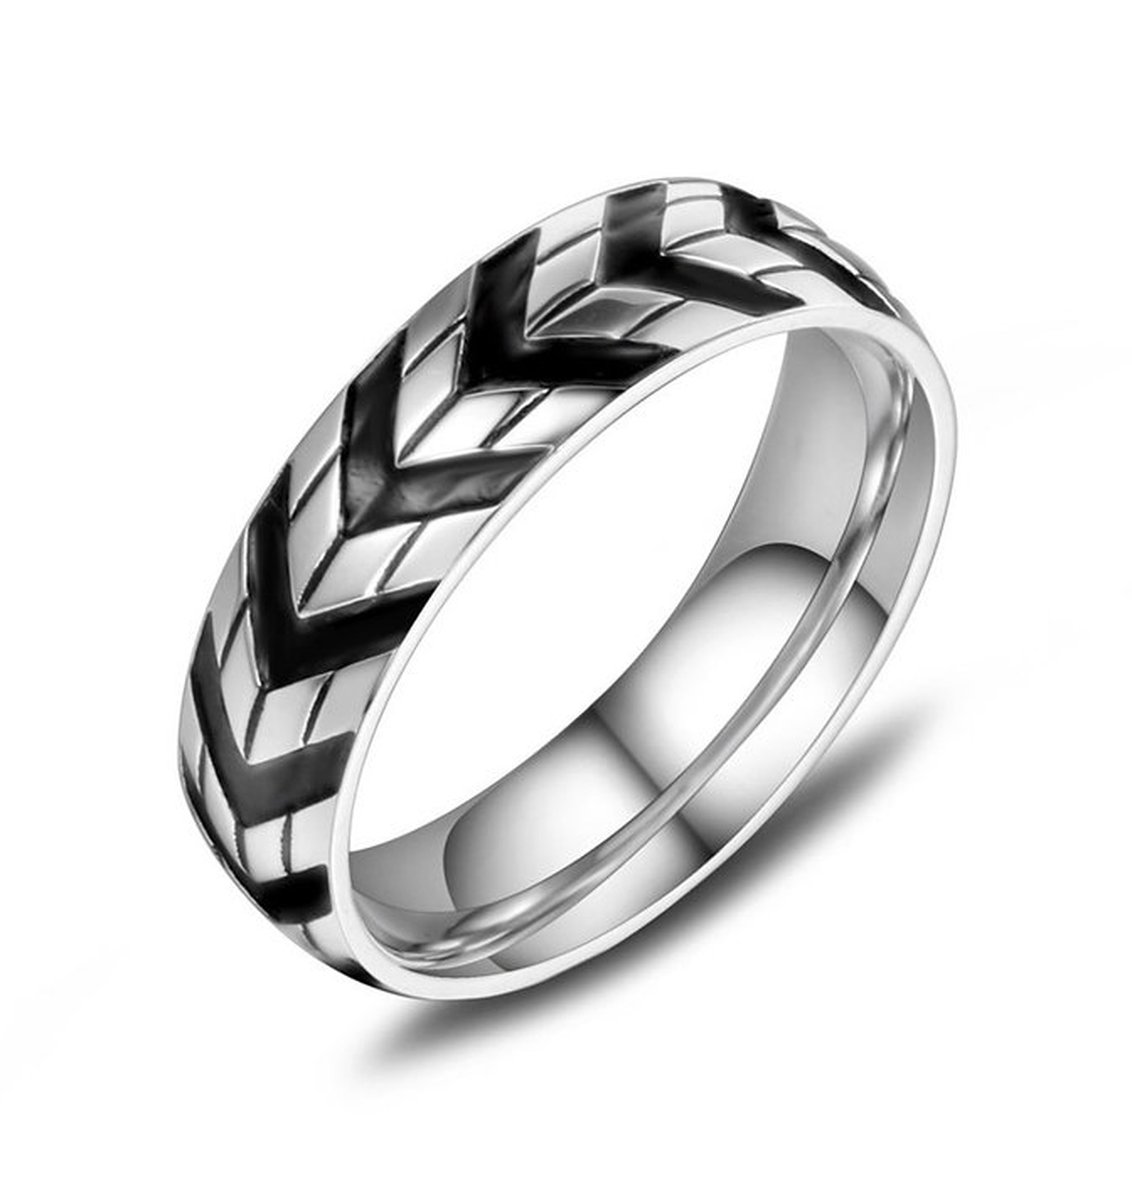 Ring heren staal zilver zwart kleur - Stalen Ringen van Mauro Vinci - met Geschenkverpakking - Sieraden voor de Man - Maat 9